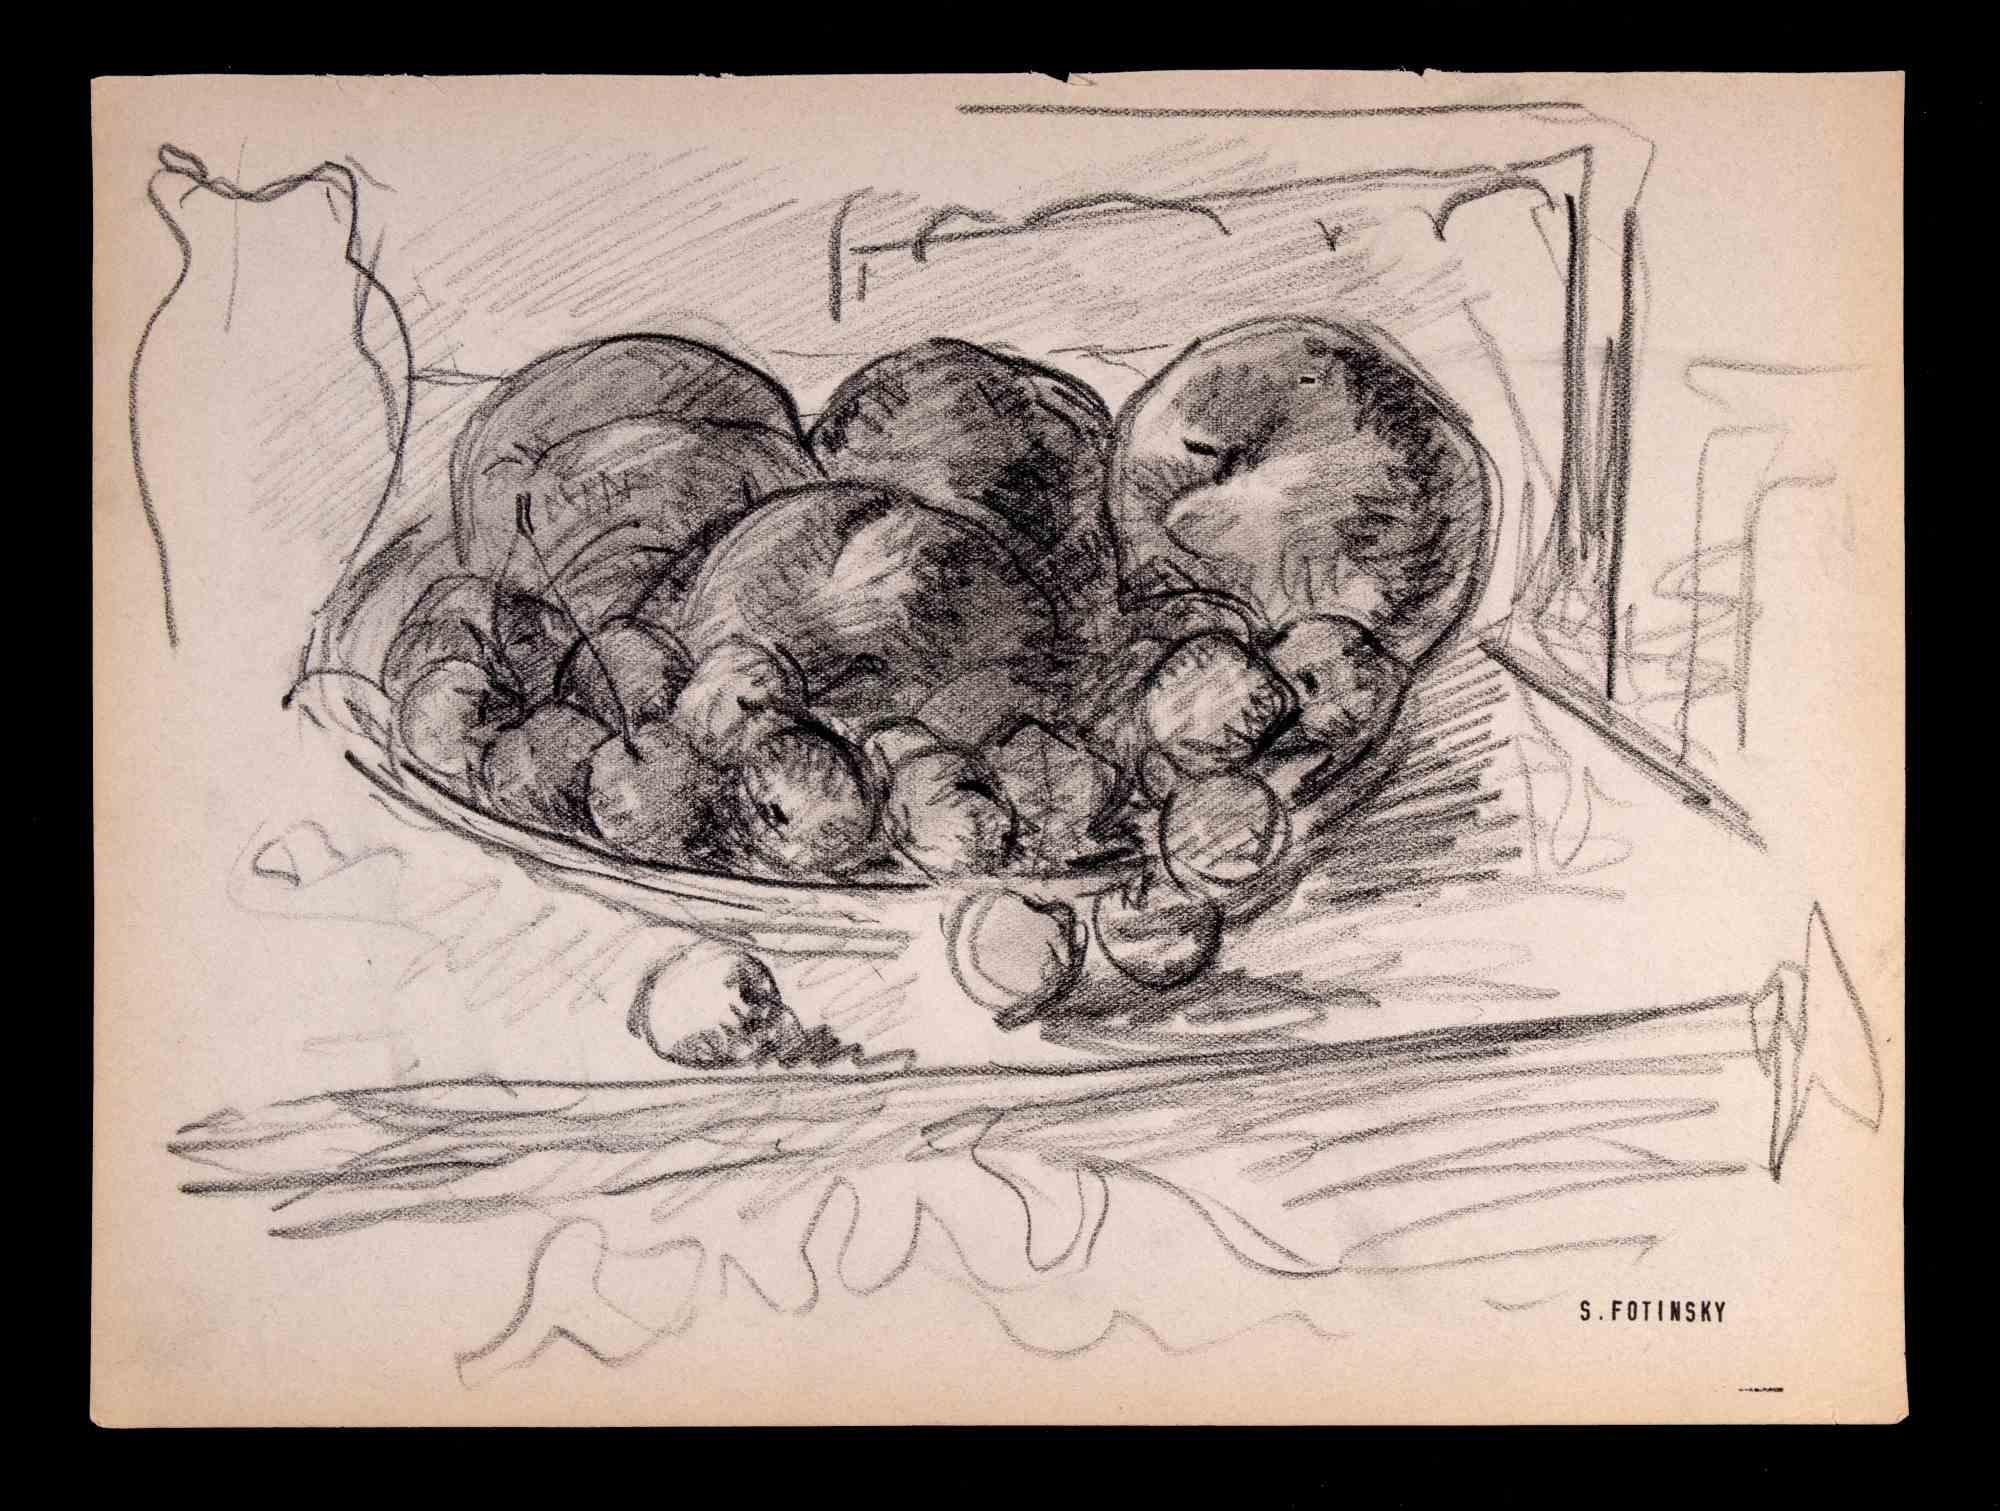 Das Stillleben ist ein Kunstwerk von Serge Fotinsky aus dem Jahr 1947. 

Originalzeichnung in Bleistift.

Signatur unten rechts.

20 x 27 cm.

Guter Zustand mit Ausnahme einiger zeitbedingter Vergilbungen.